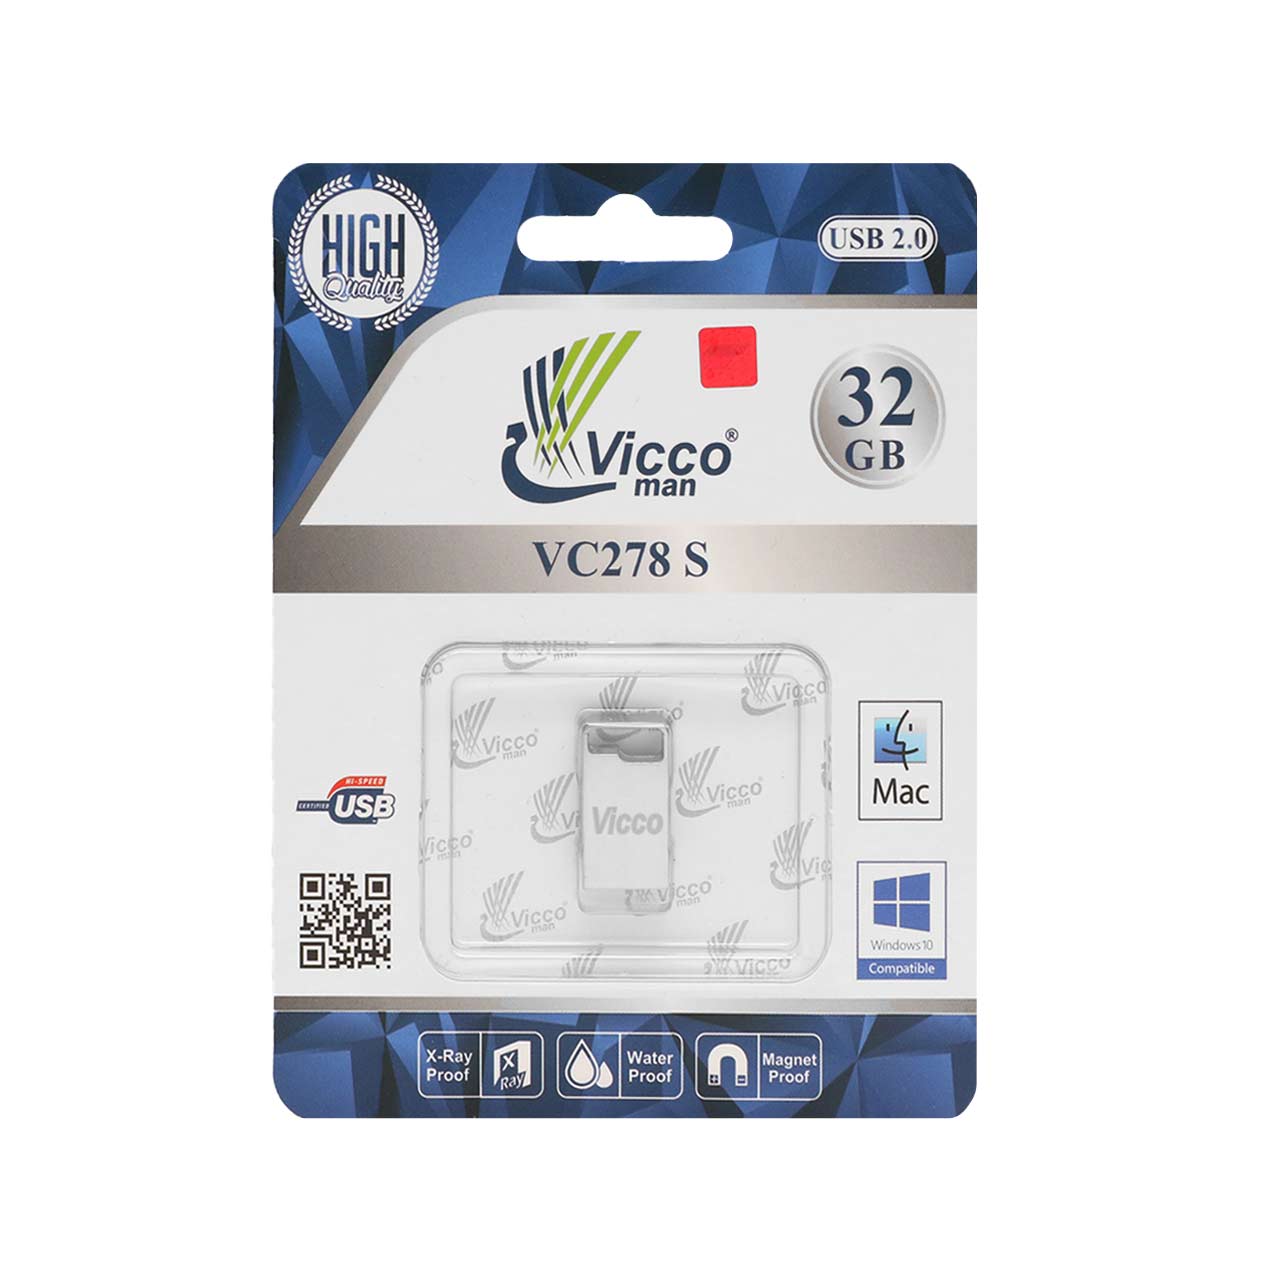 فلش : نقره ای Vicco man VC278 S USB2.0 Flash Memory-32GB قیمت: ۱۴۵ تومان